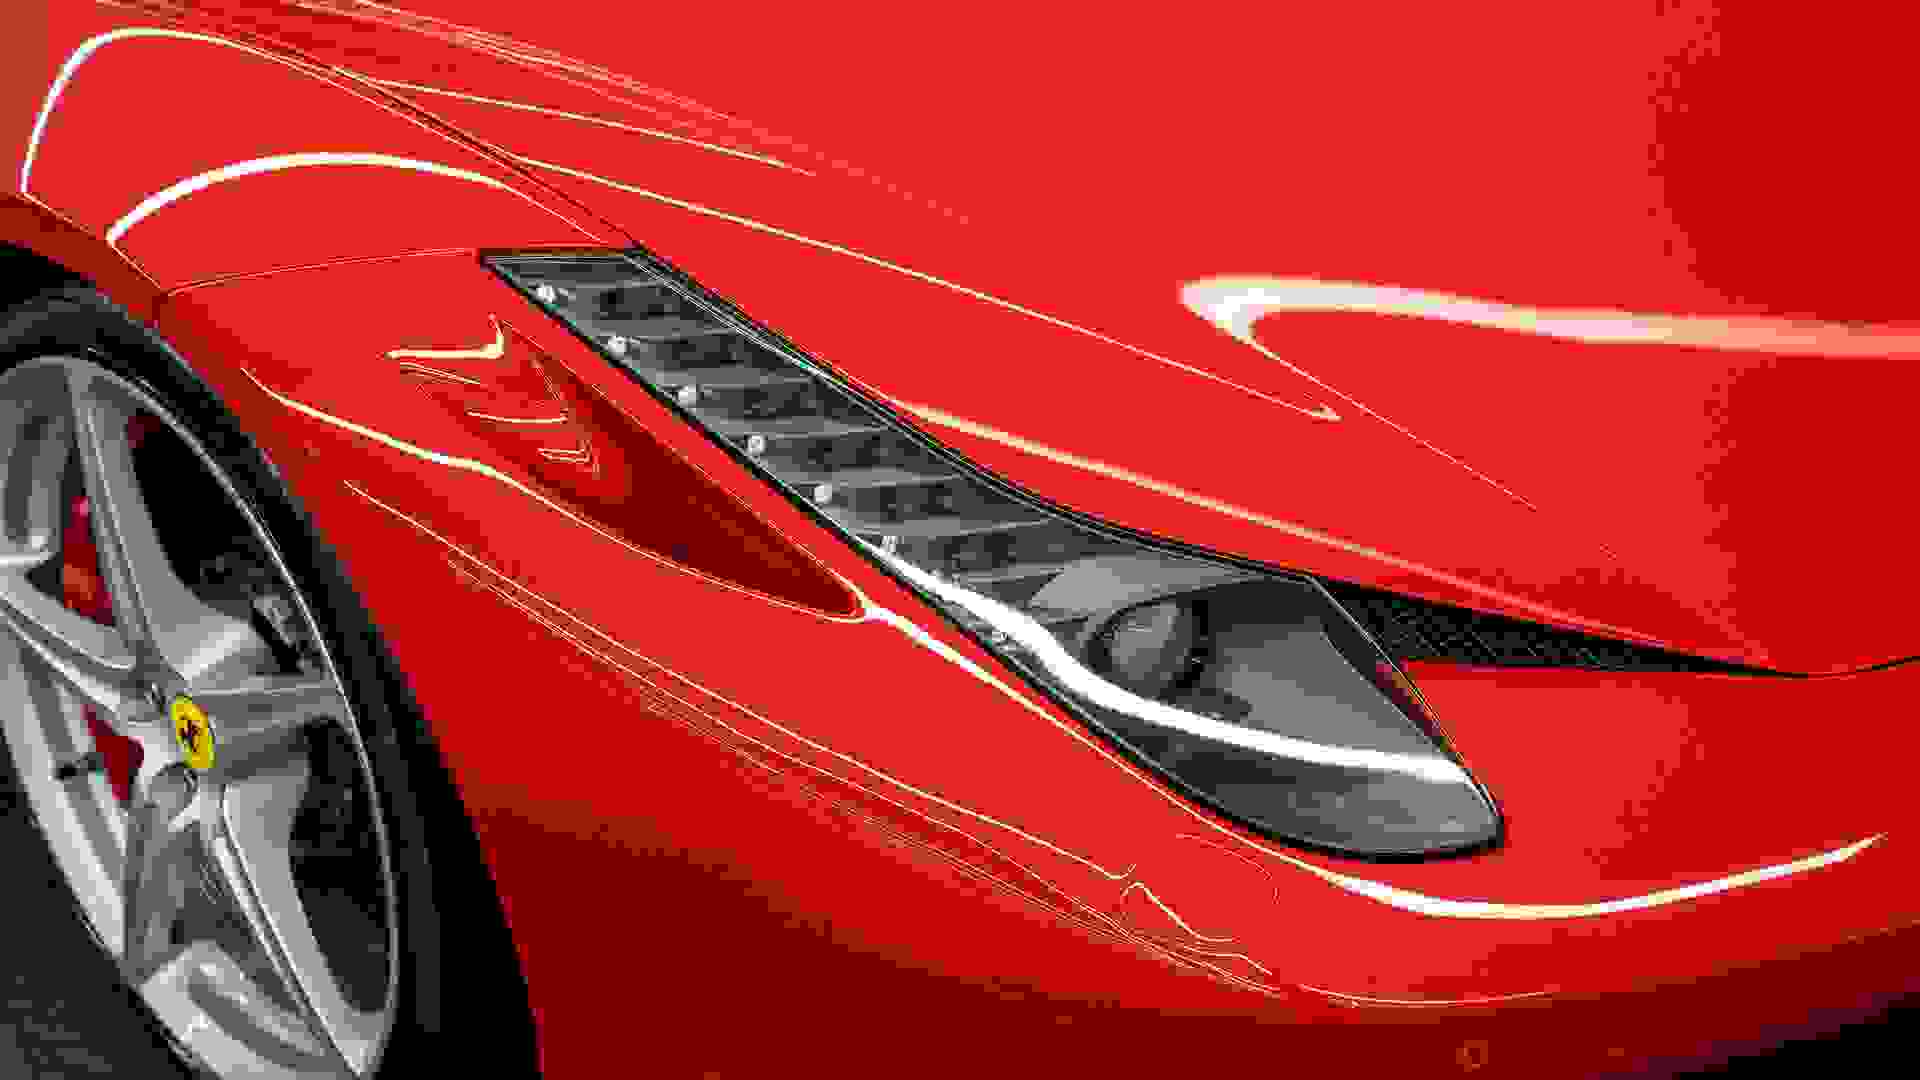 Ferrari 458 Photo 04c5c76c-a604-44ce-adaf-8b7258978f30.jpg